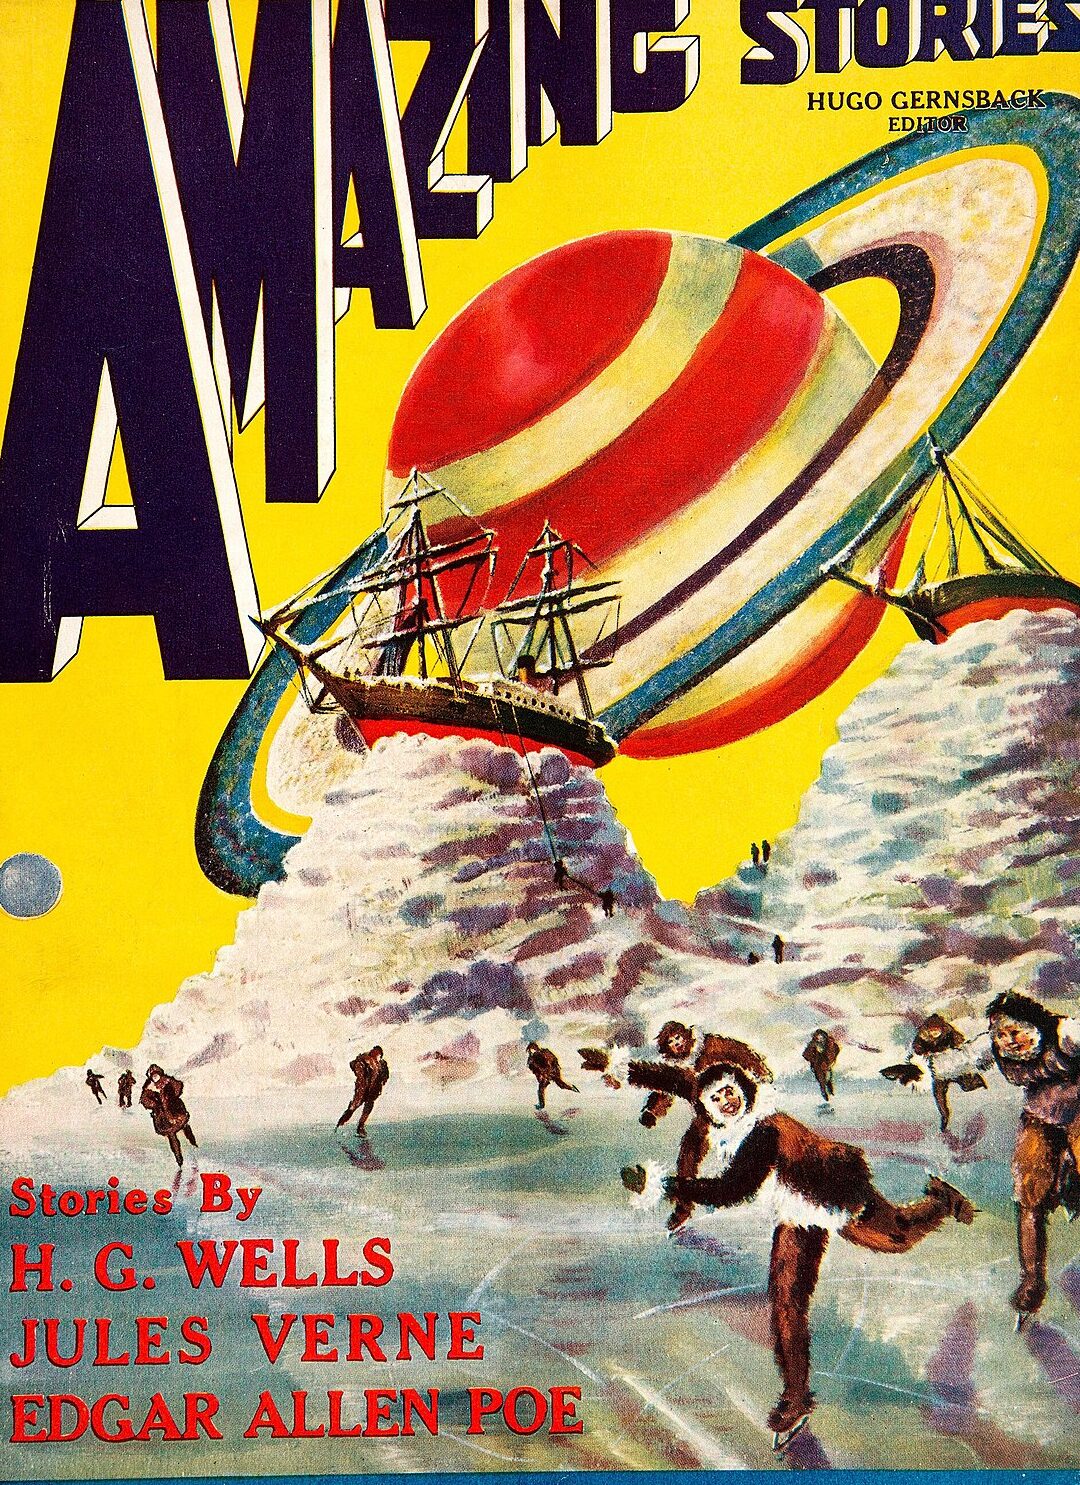 Historia de las revistas estadounidenses de ciencia ficción y fantasía hasta 1950...